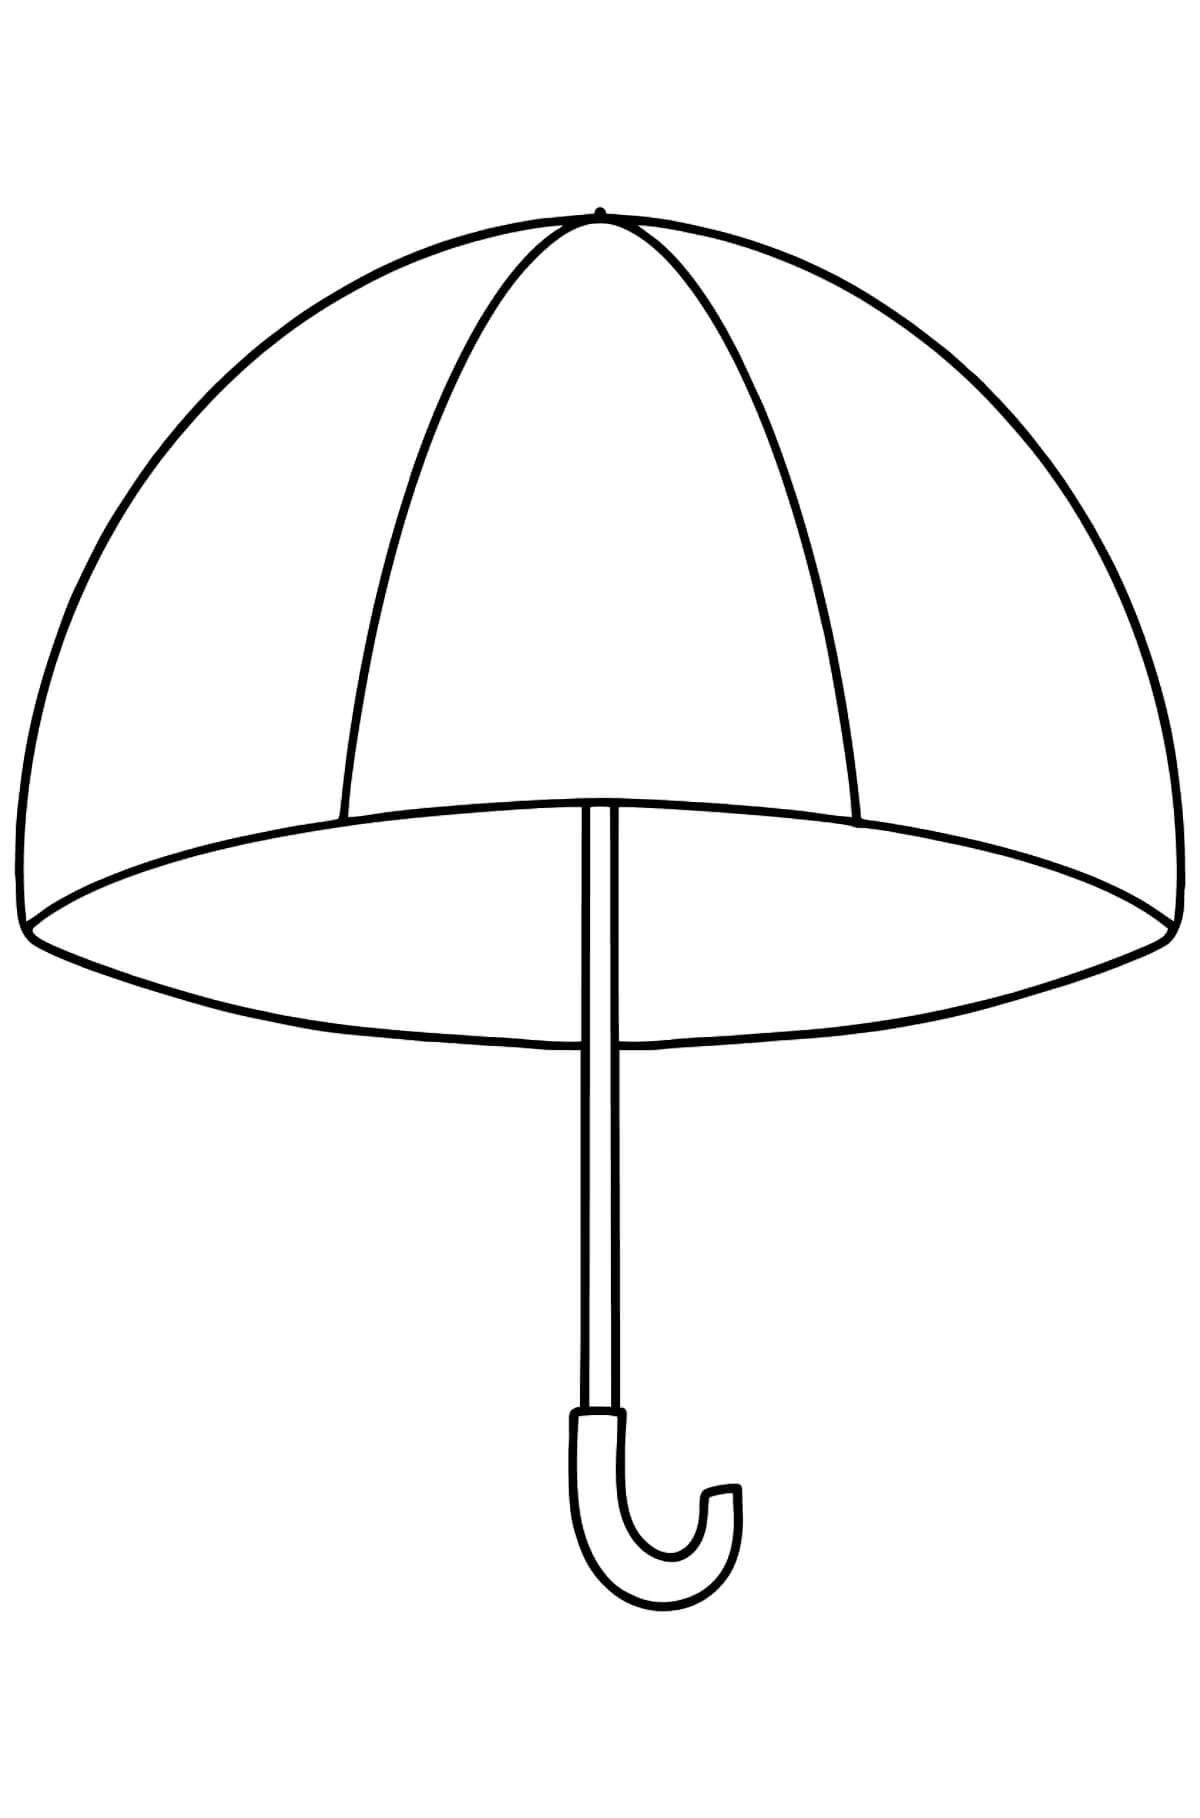 Зонтик раскраска для детей 3-4 лет